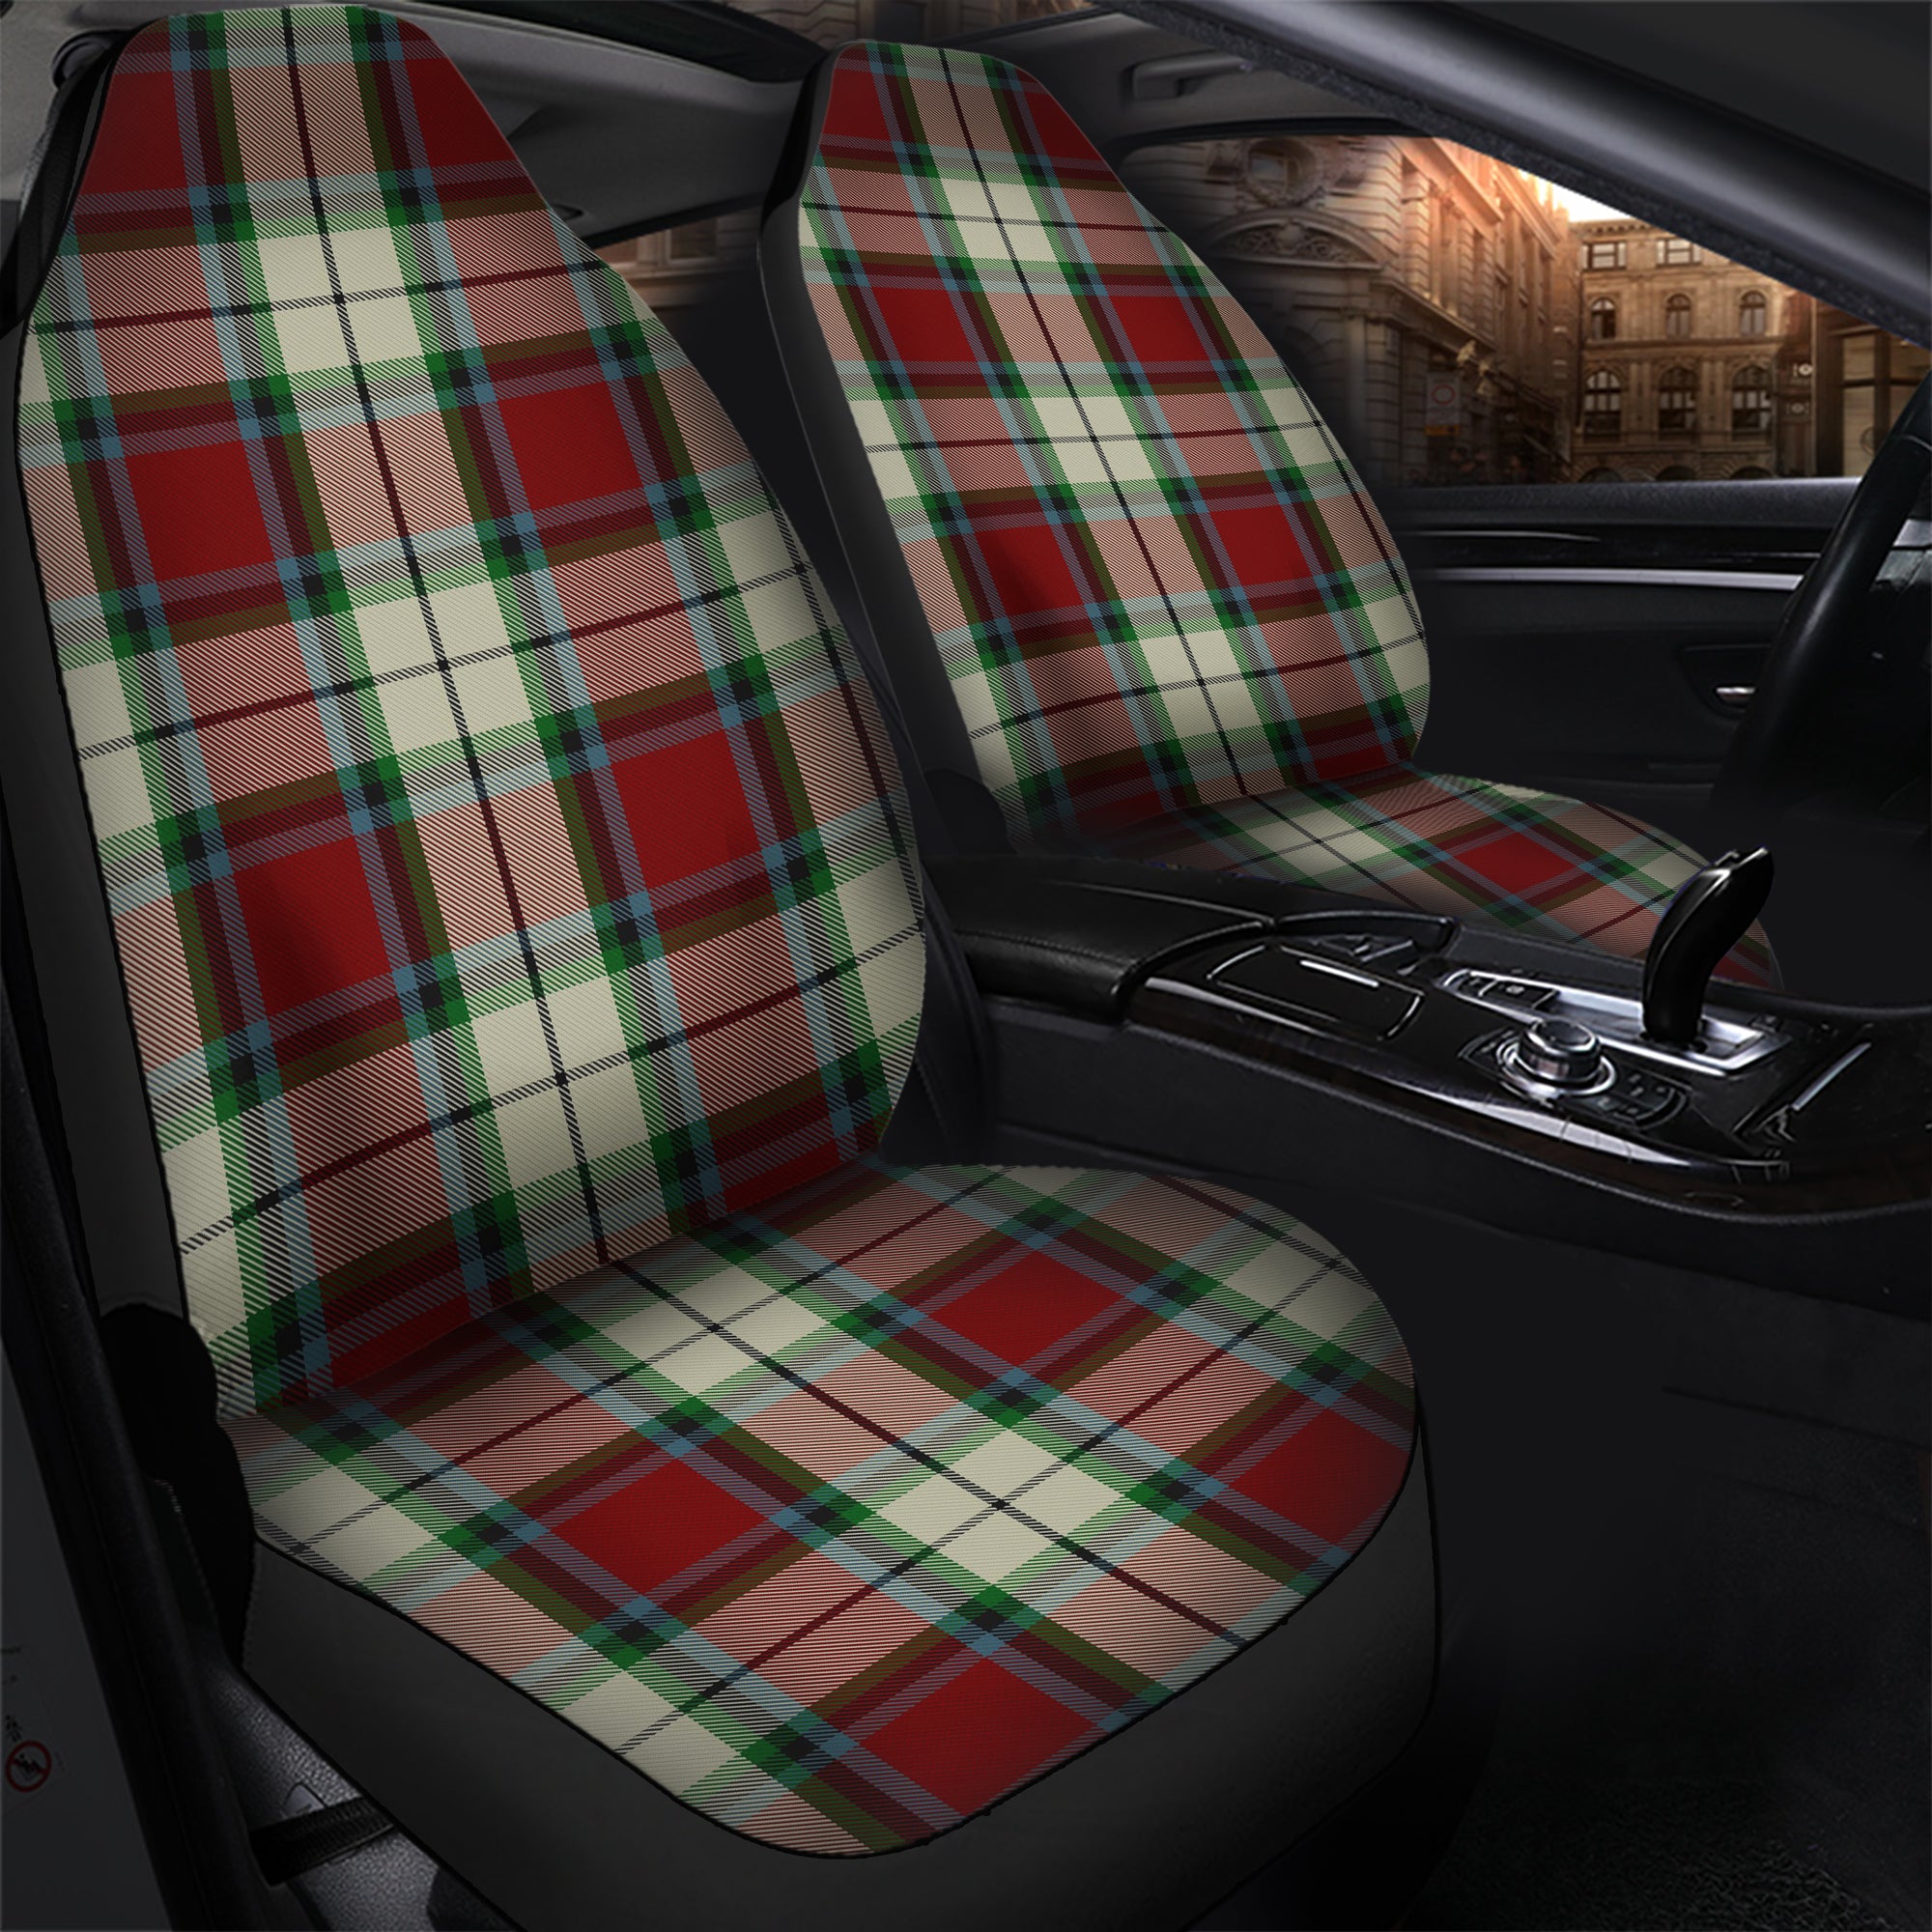 scottish-rose-white-dress-clan-tartan-car-seat-cover